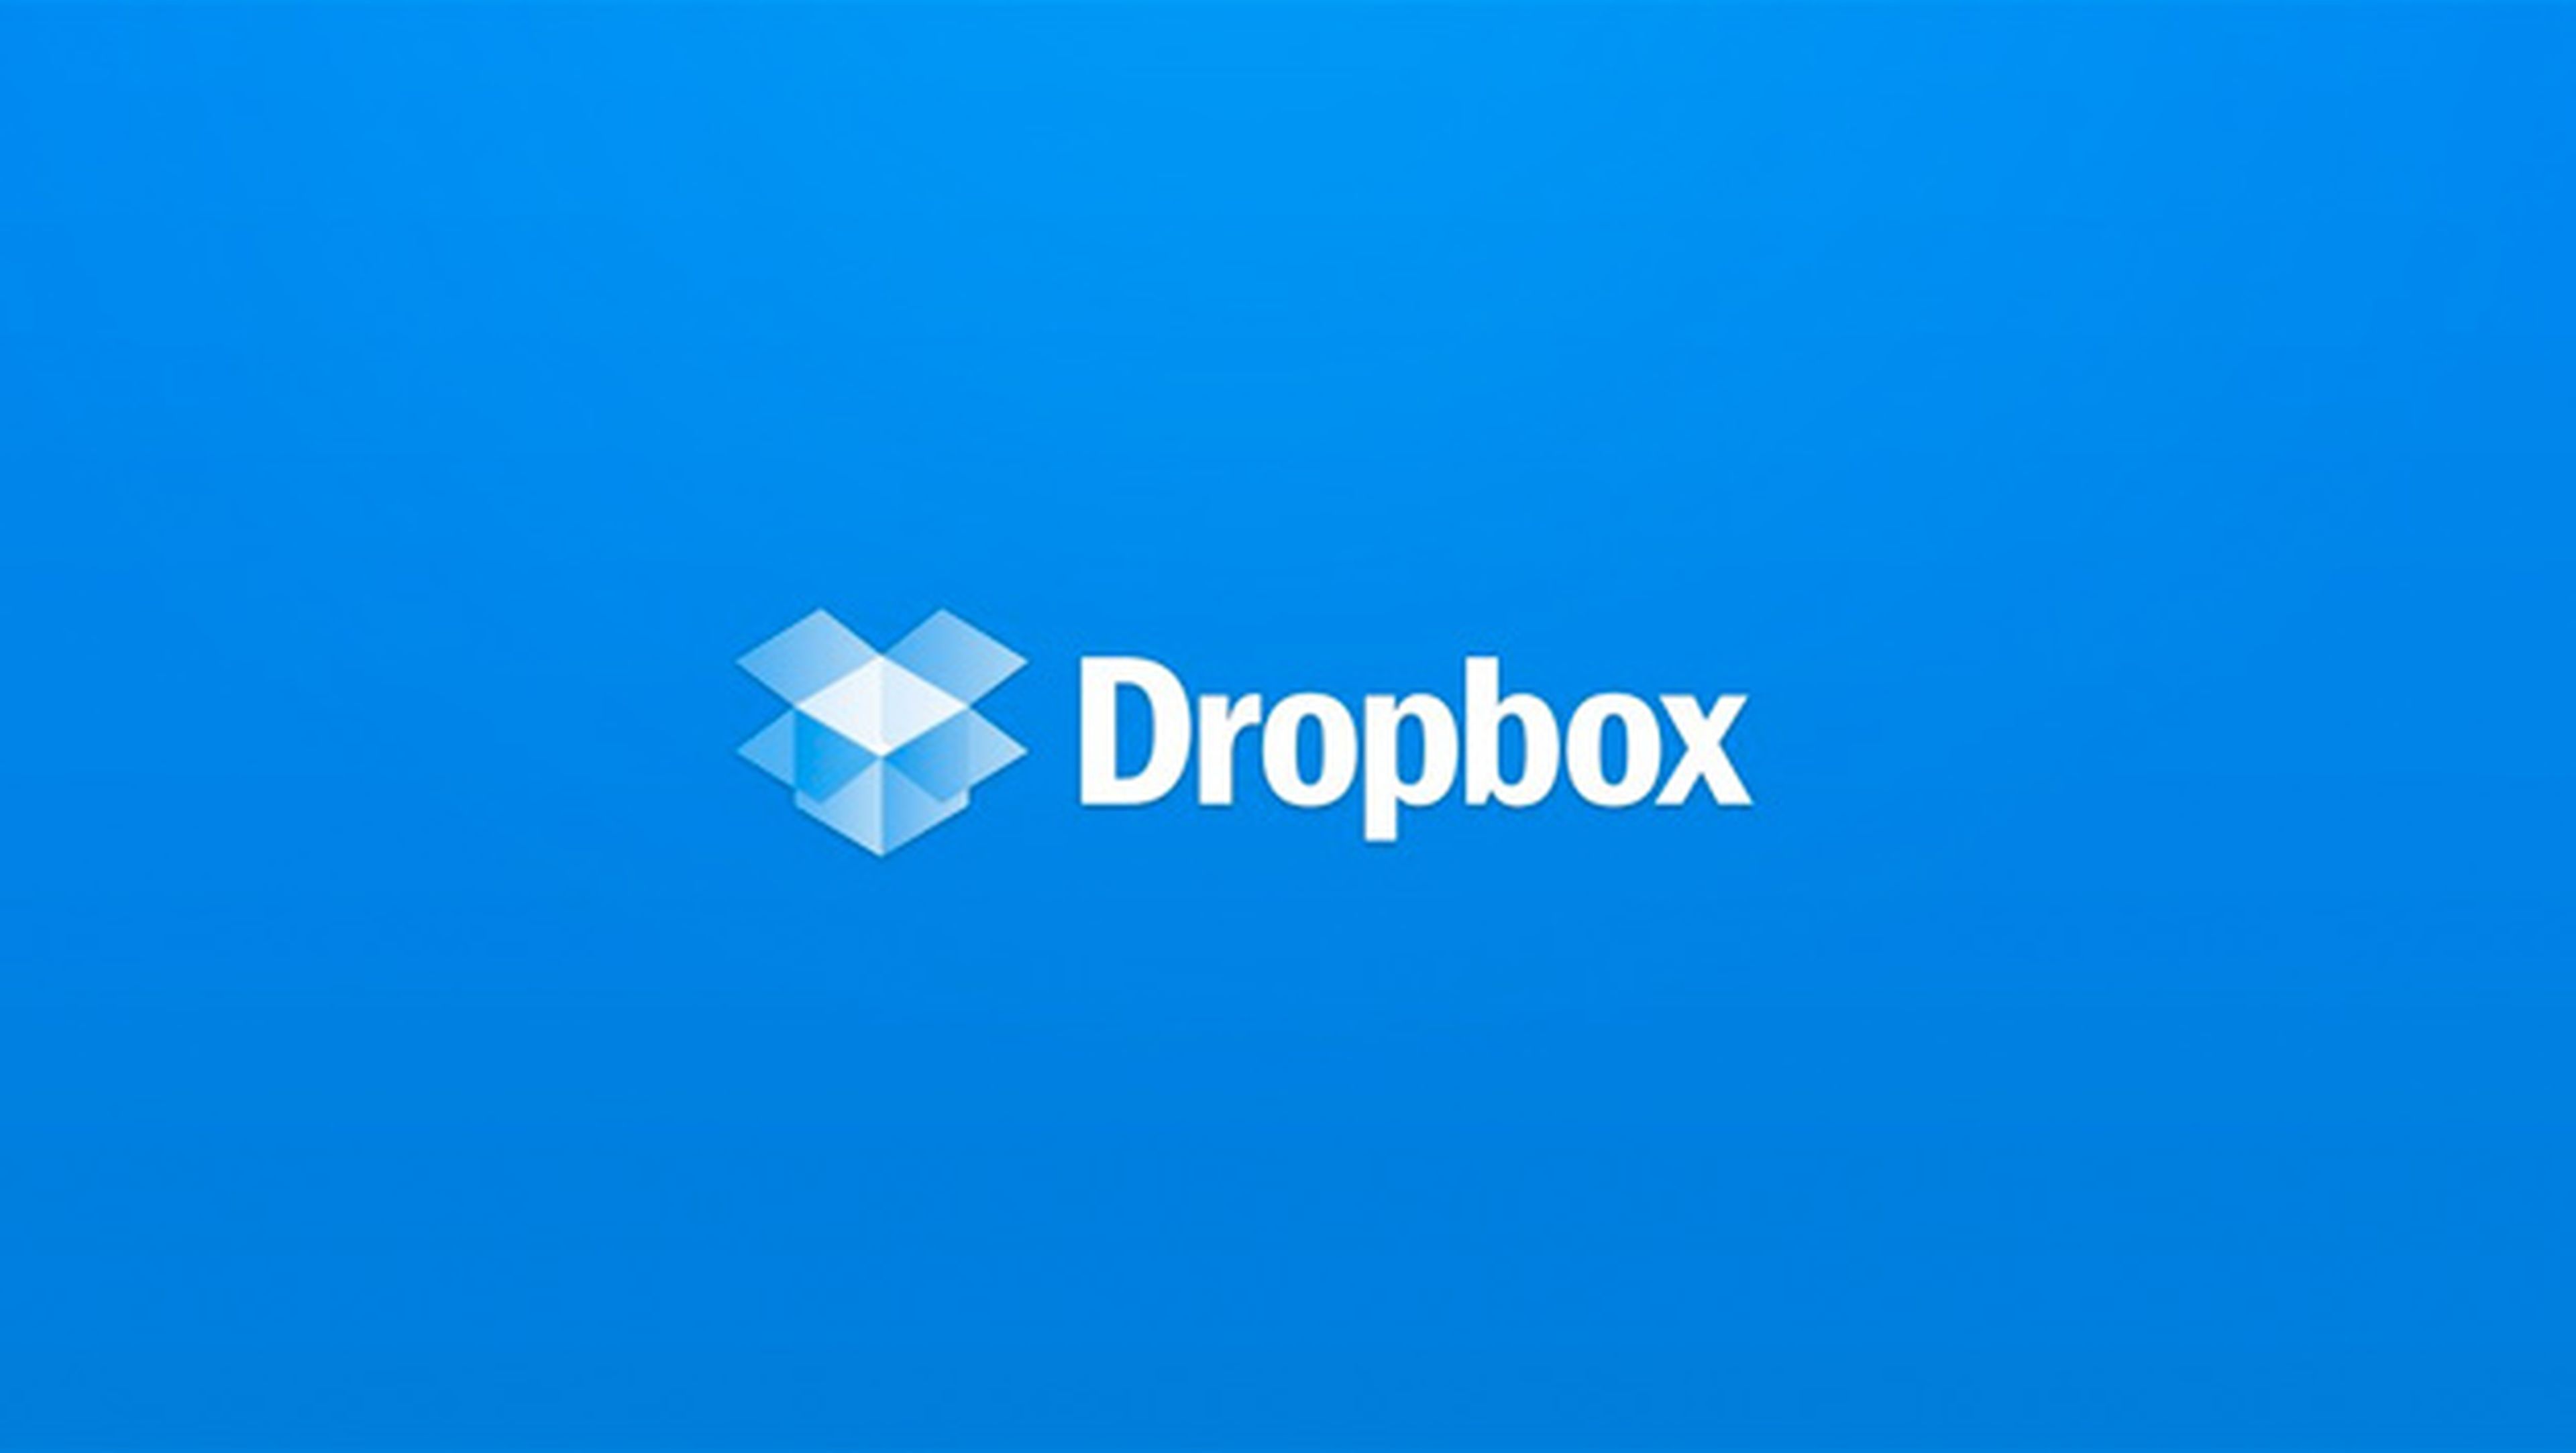 Cuenta Dropbox direcciones IP registro inicio de sesion hackeo